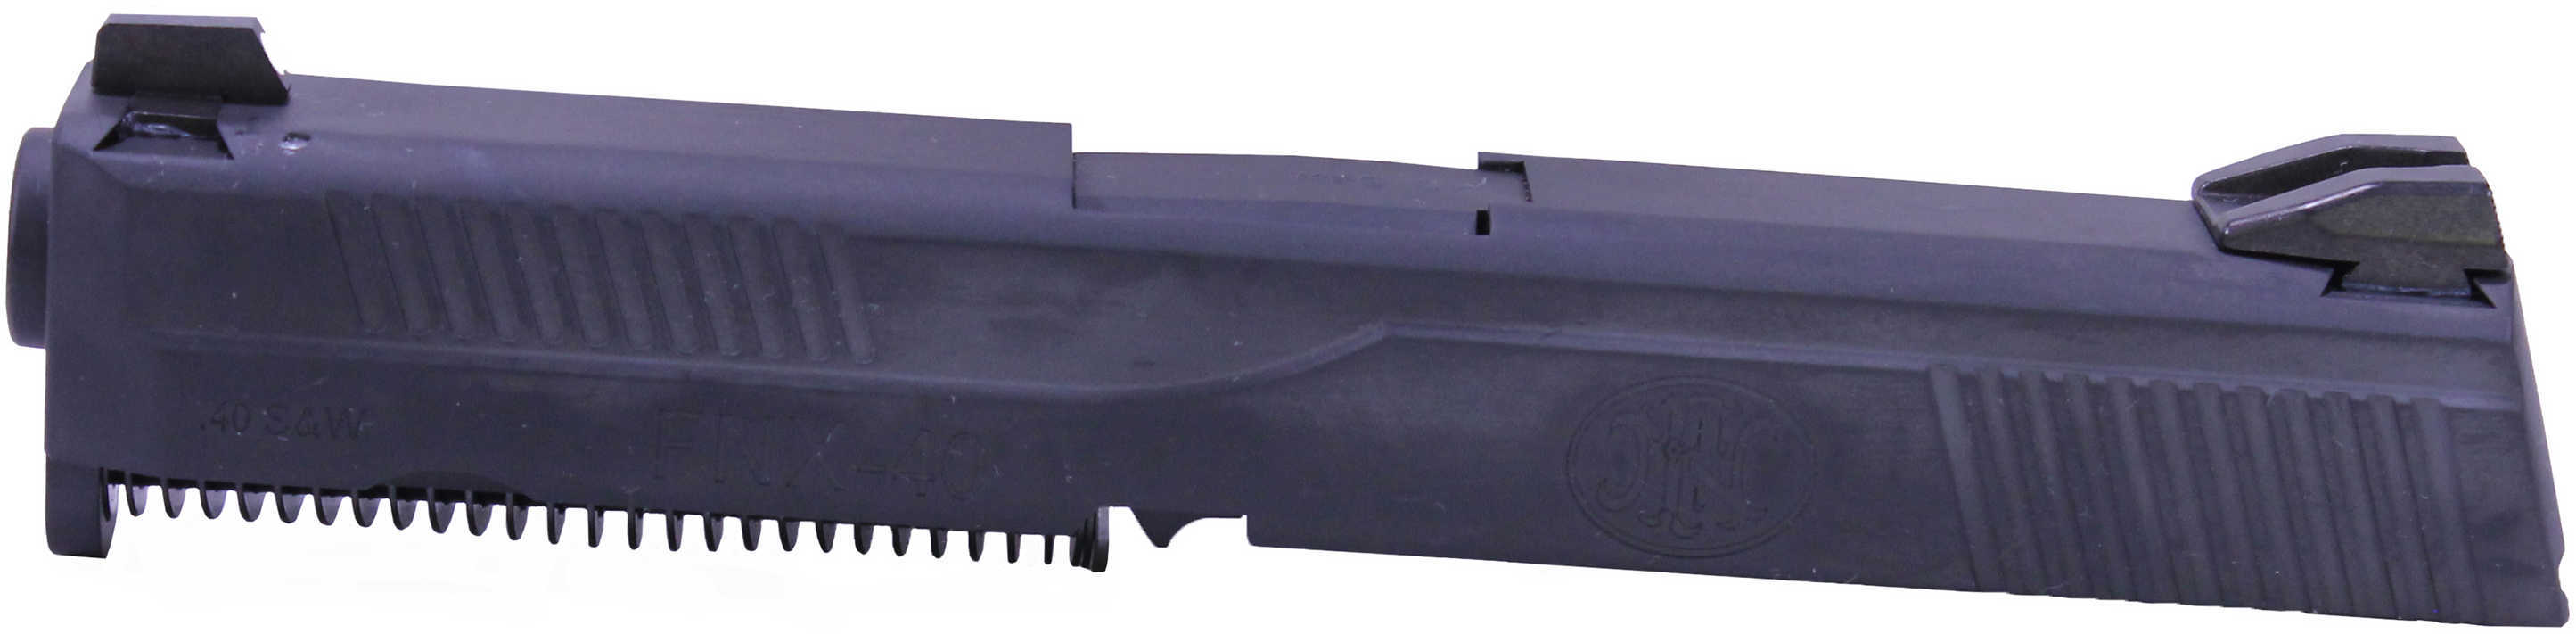 Firenook FN FNX-45 Tactical Barrel 45 ACP Black Md: 67205-11